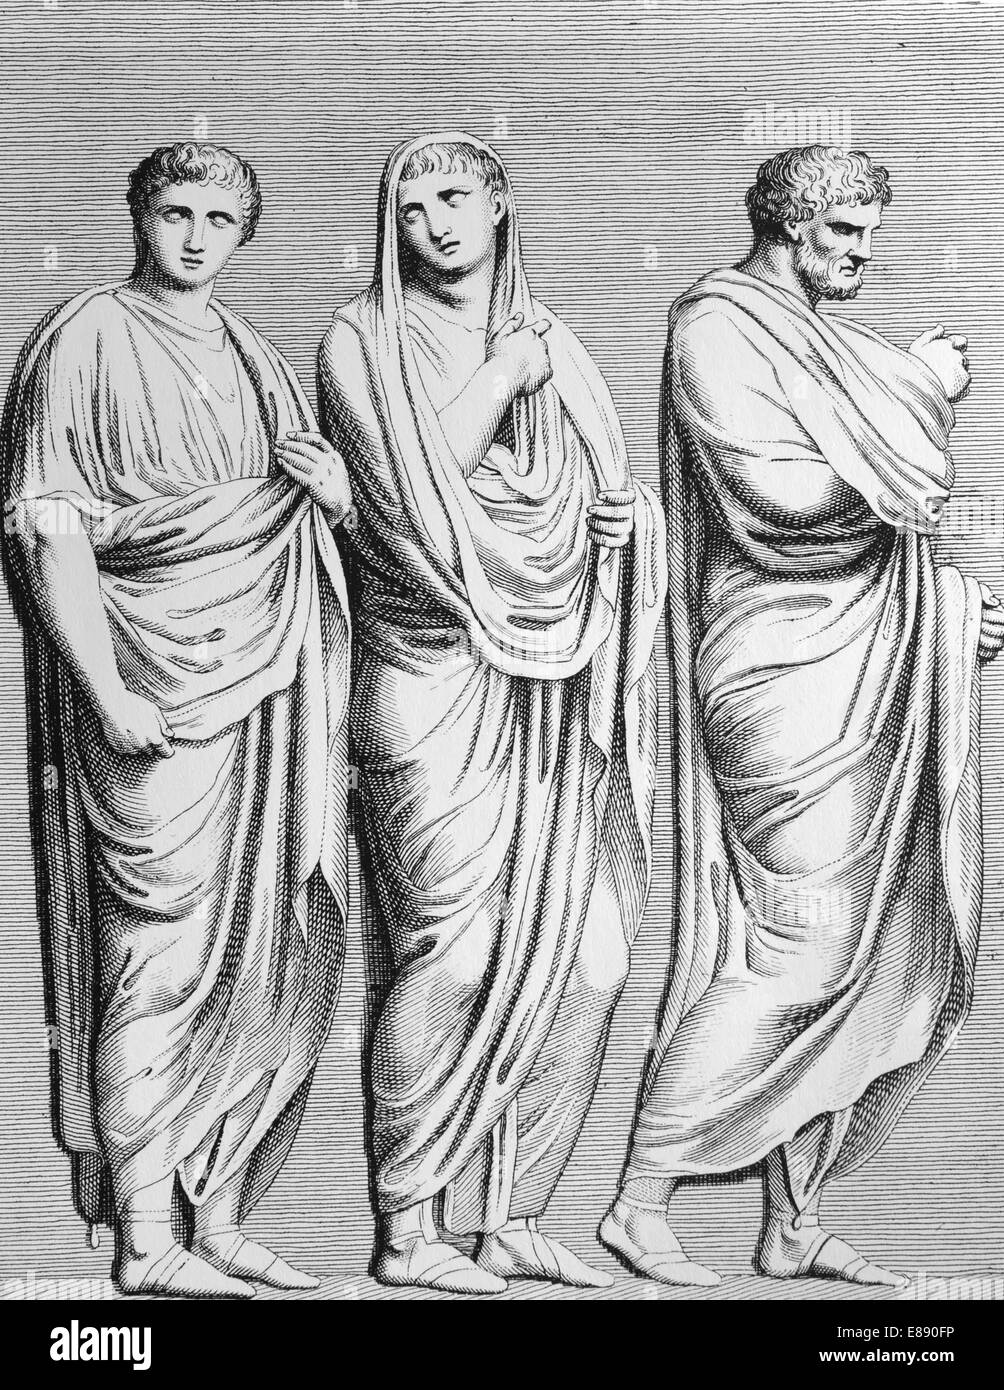 L'antiquité. La Rome antique. Toges romaines. Gravure, 19ème siècle. Banque D'Images